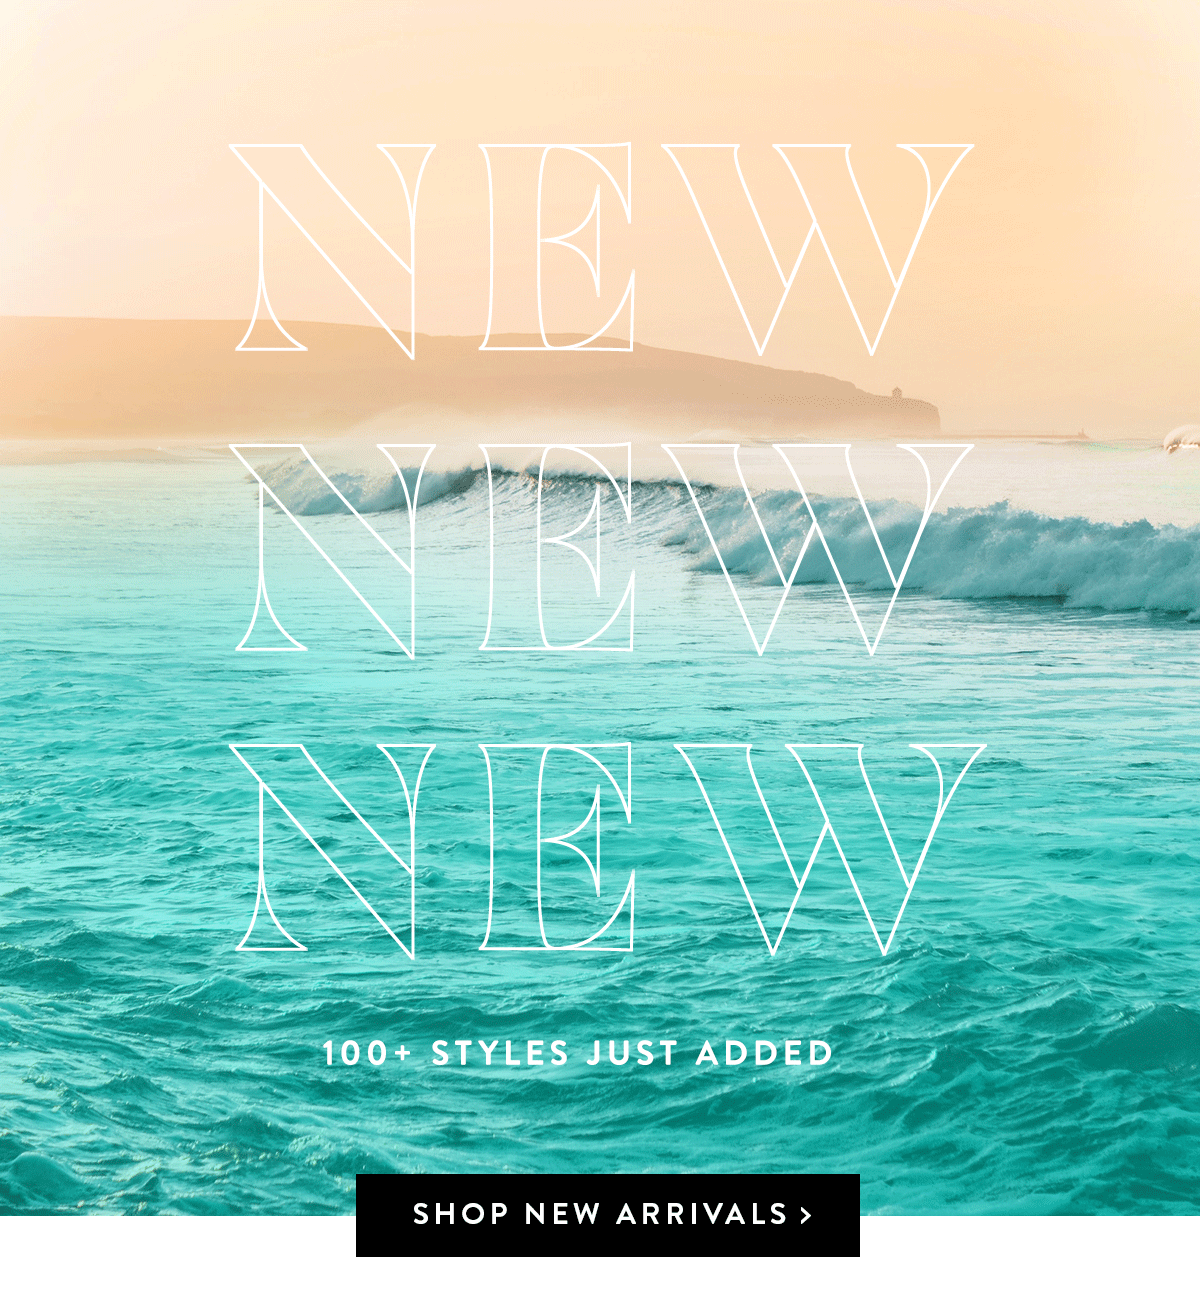 NEW NEW NEW | SHOP NEW ARRIVALS >